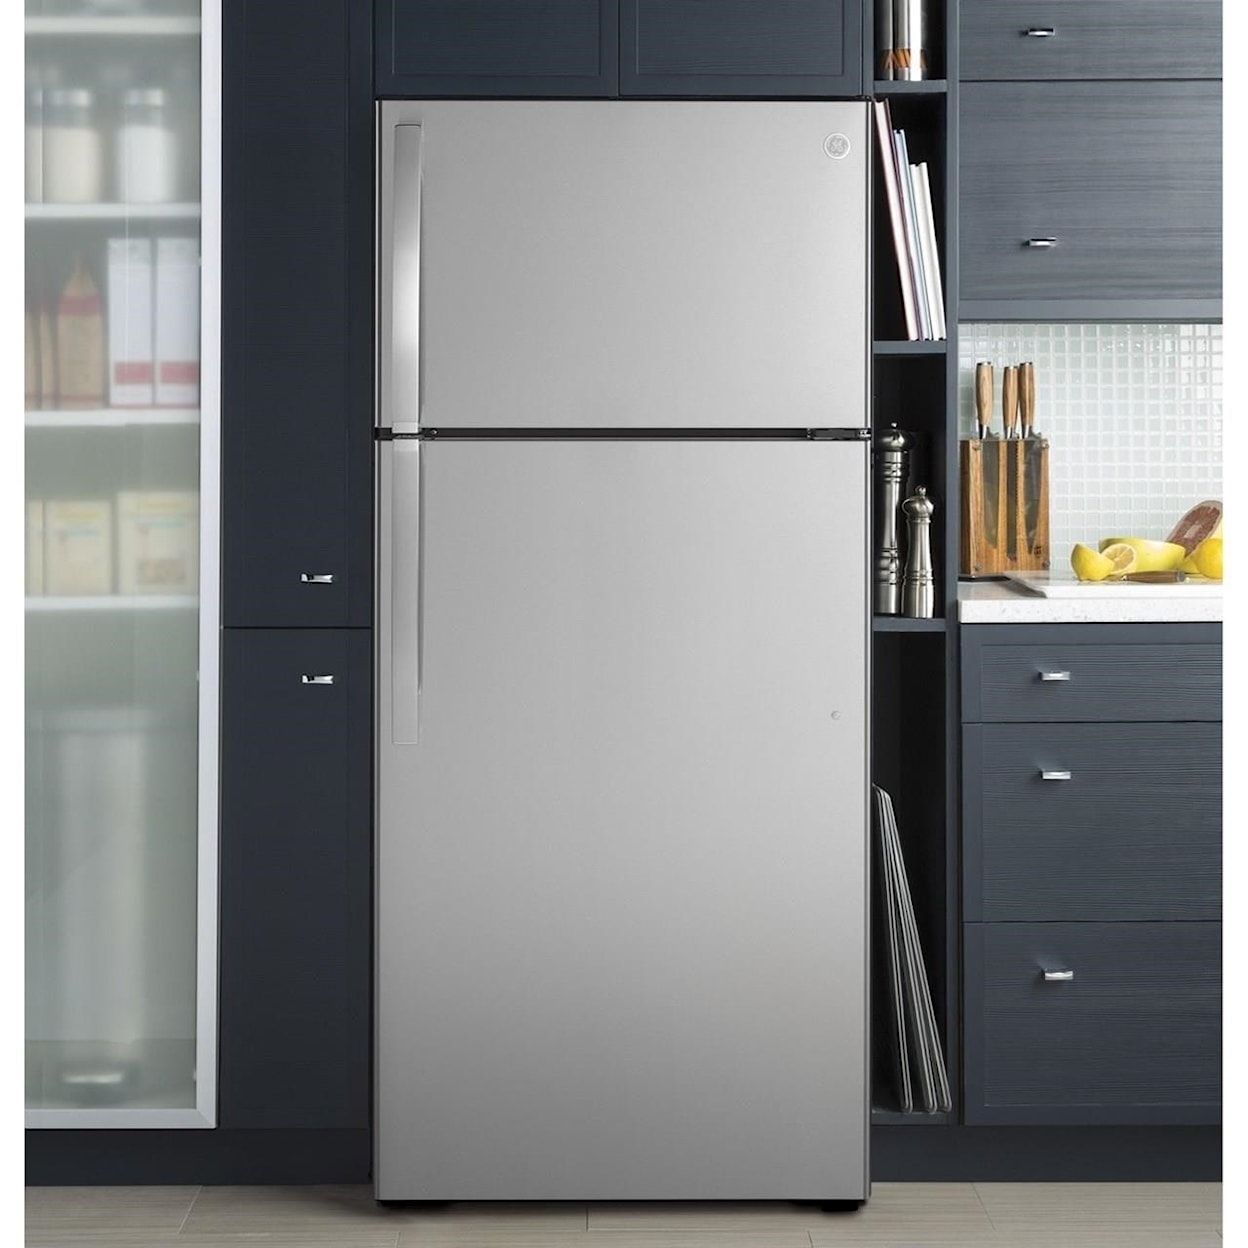 GE Appliances GE Top-Freezer Refrigerators GE® ENERGY STAR® 16.6 Cu. Ft. Top-Freezer Re